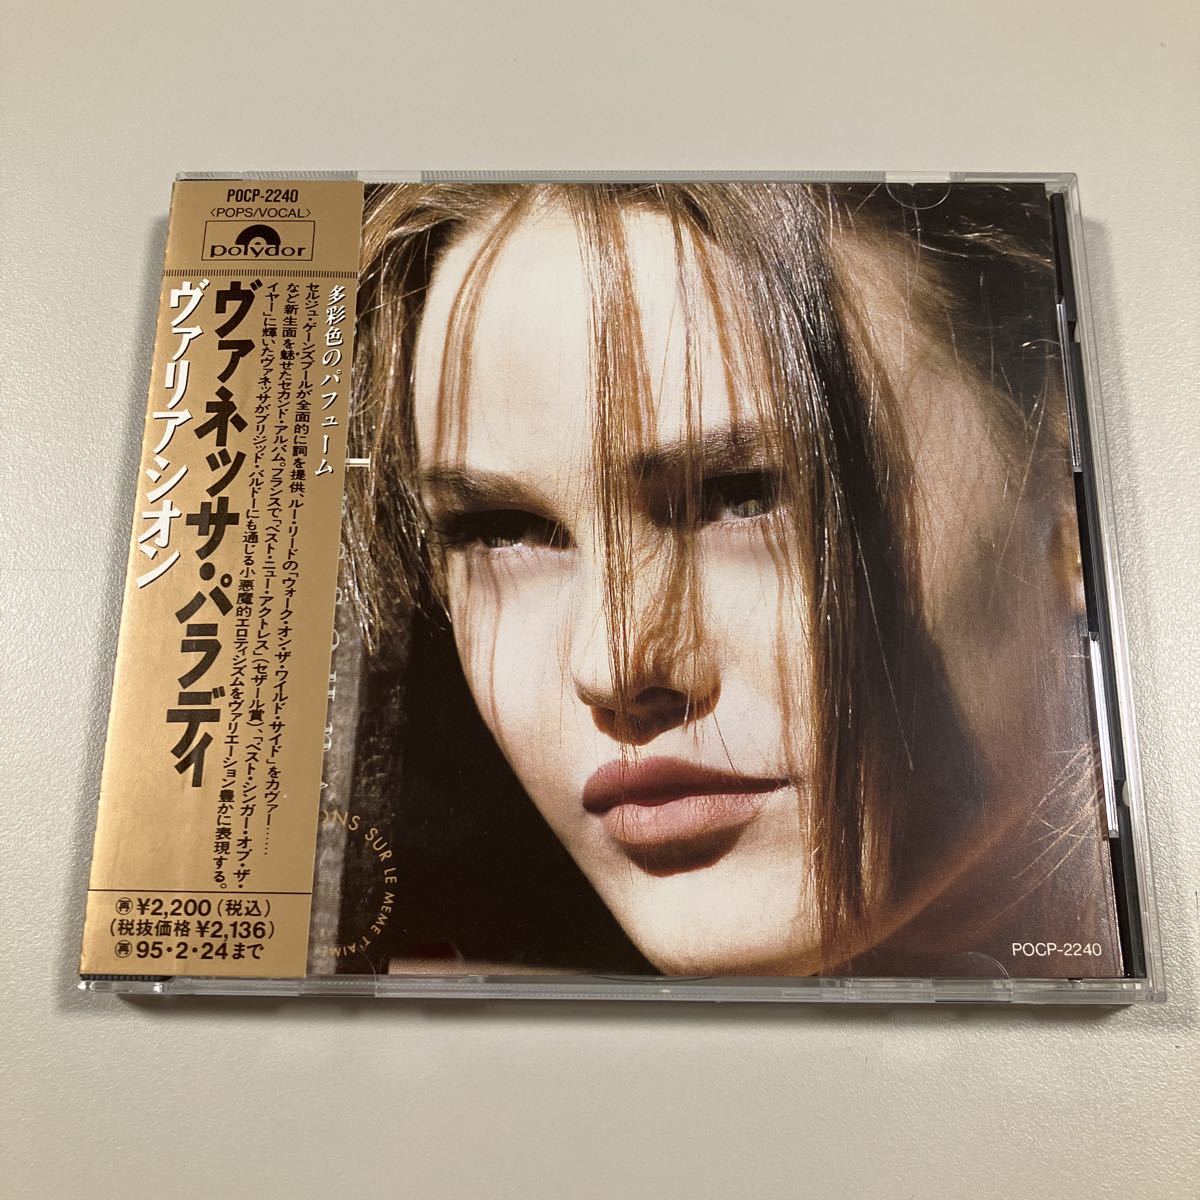 [ западная музыка 2] ценный .CD.! Vanessa *palativanessa paradisva задний Zion записано в Японии 